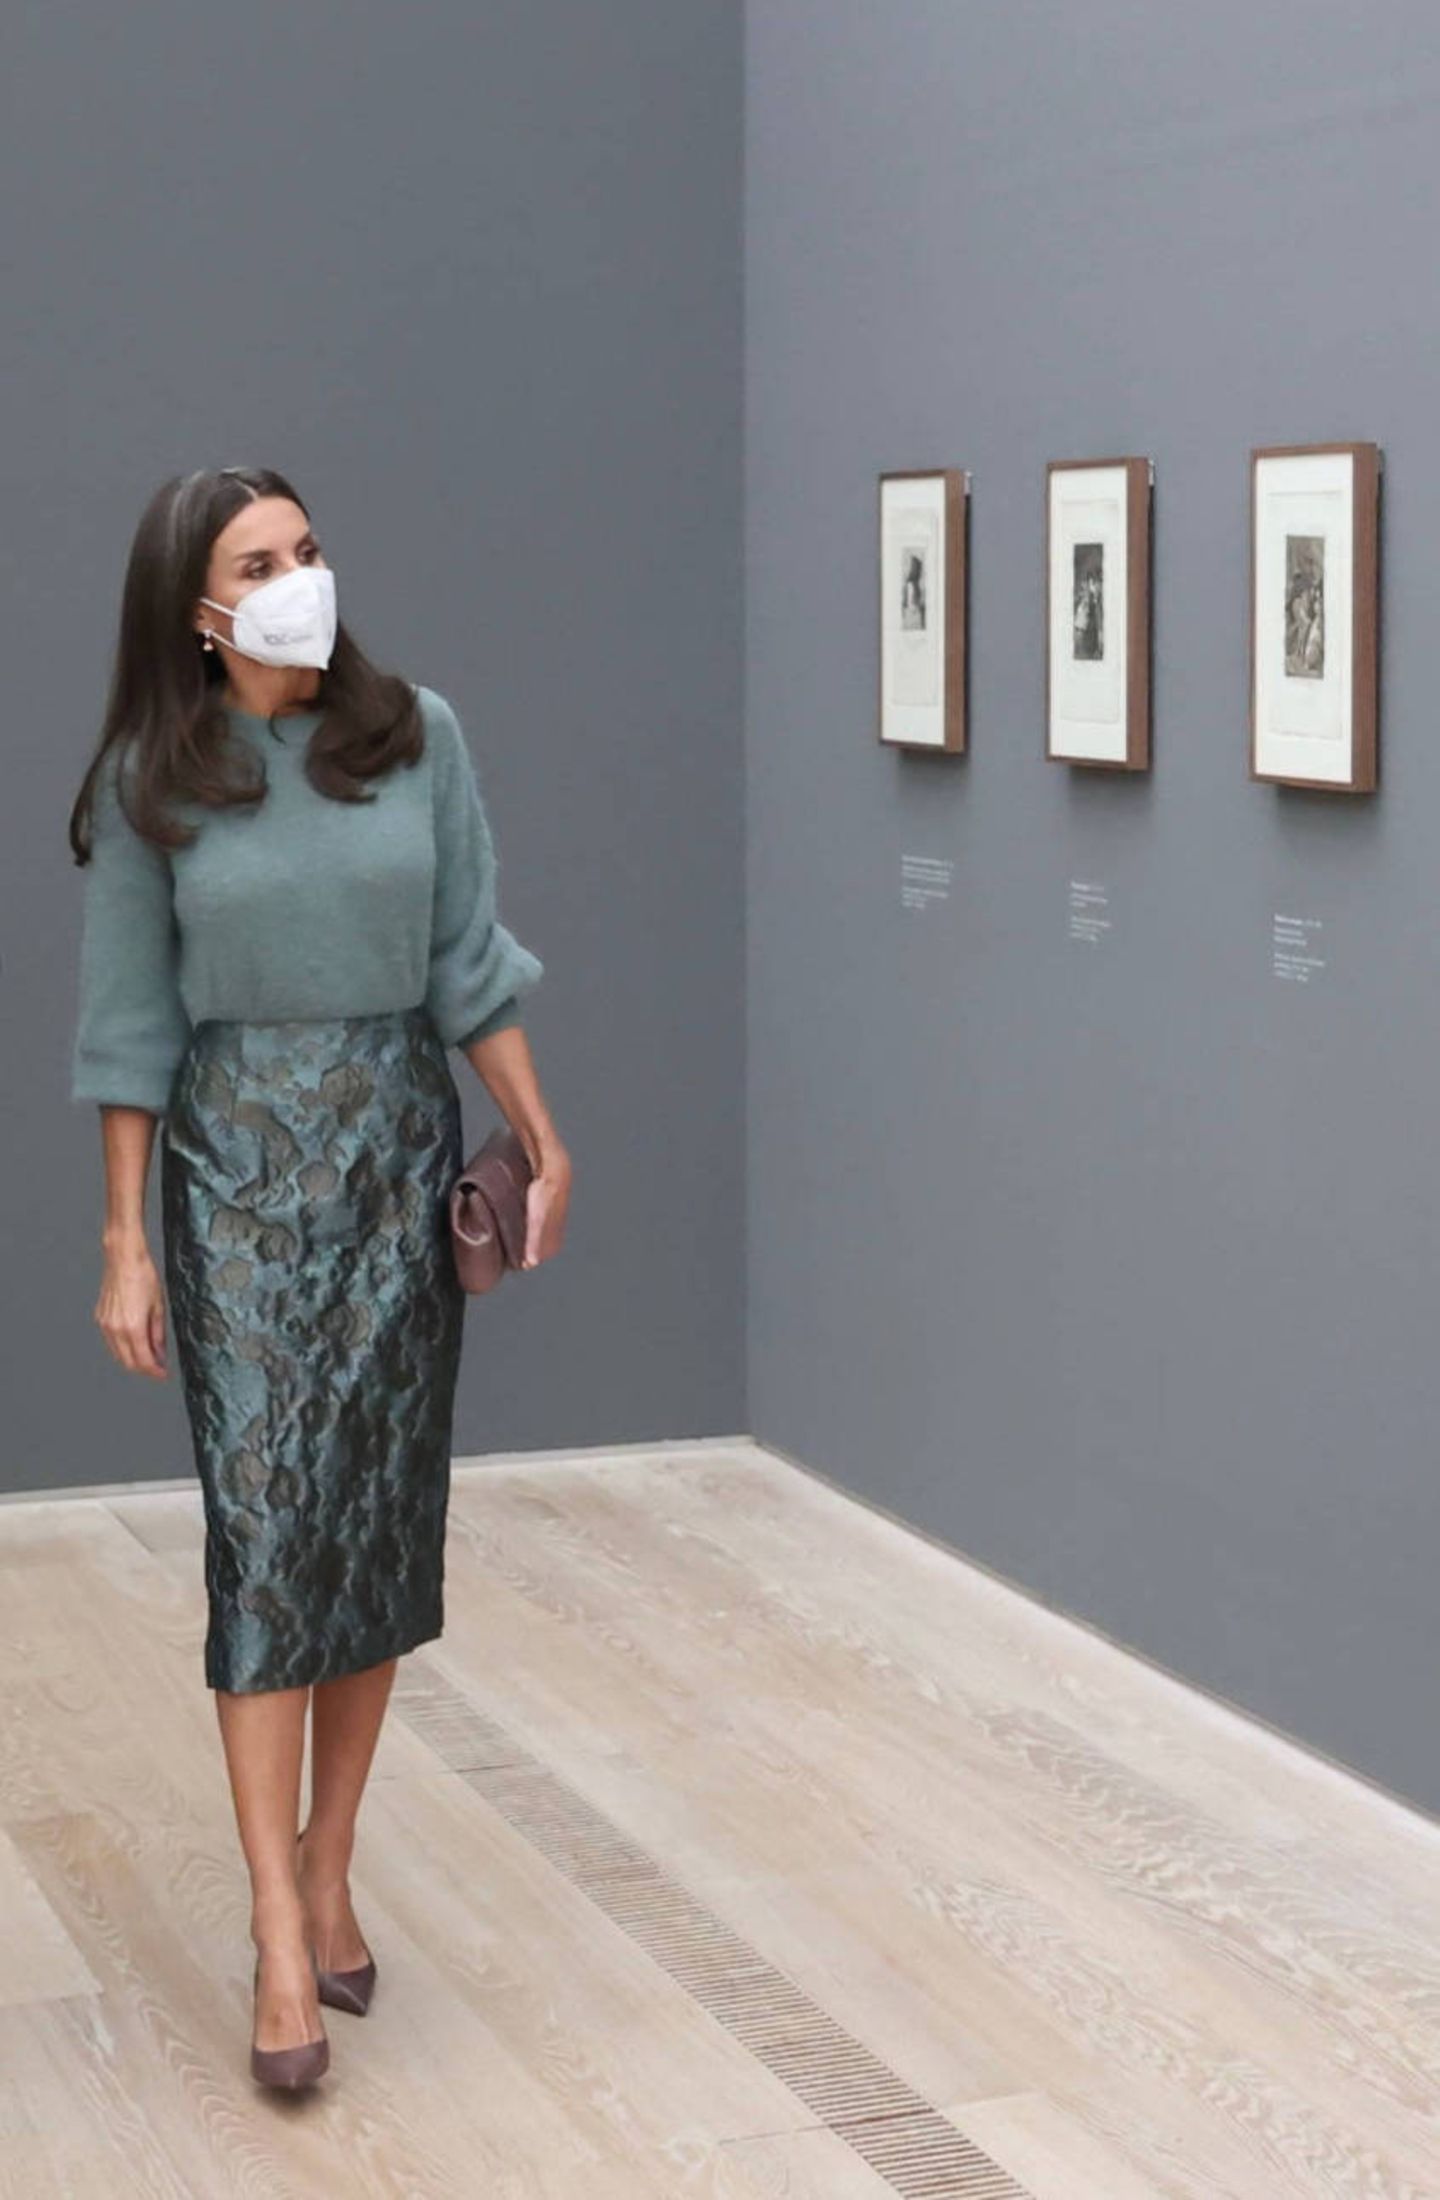 Für die Eröffnung der Ausstellung "Goya" in Basel wählt Königin Letizia ein Outfit mit Trend-Potential. Der weiche Wollpullover mit Trompetenärmeln und der leicht gemusterte Pencil Skirt kommen in angesagtem Graugrün daher und bilden in Kombination mit den grauen Accessoires den perfekten Monochrome-Look.